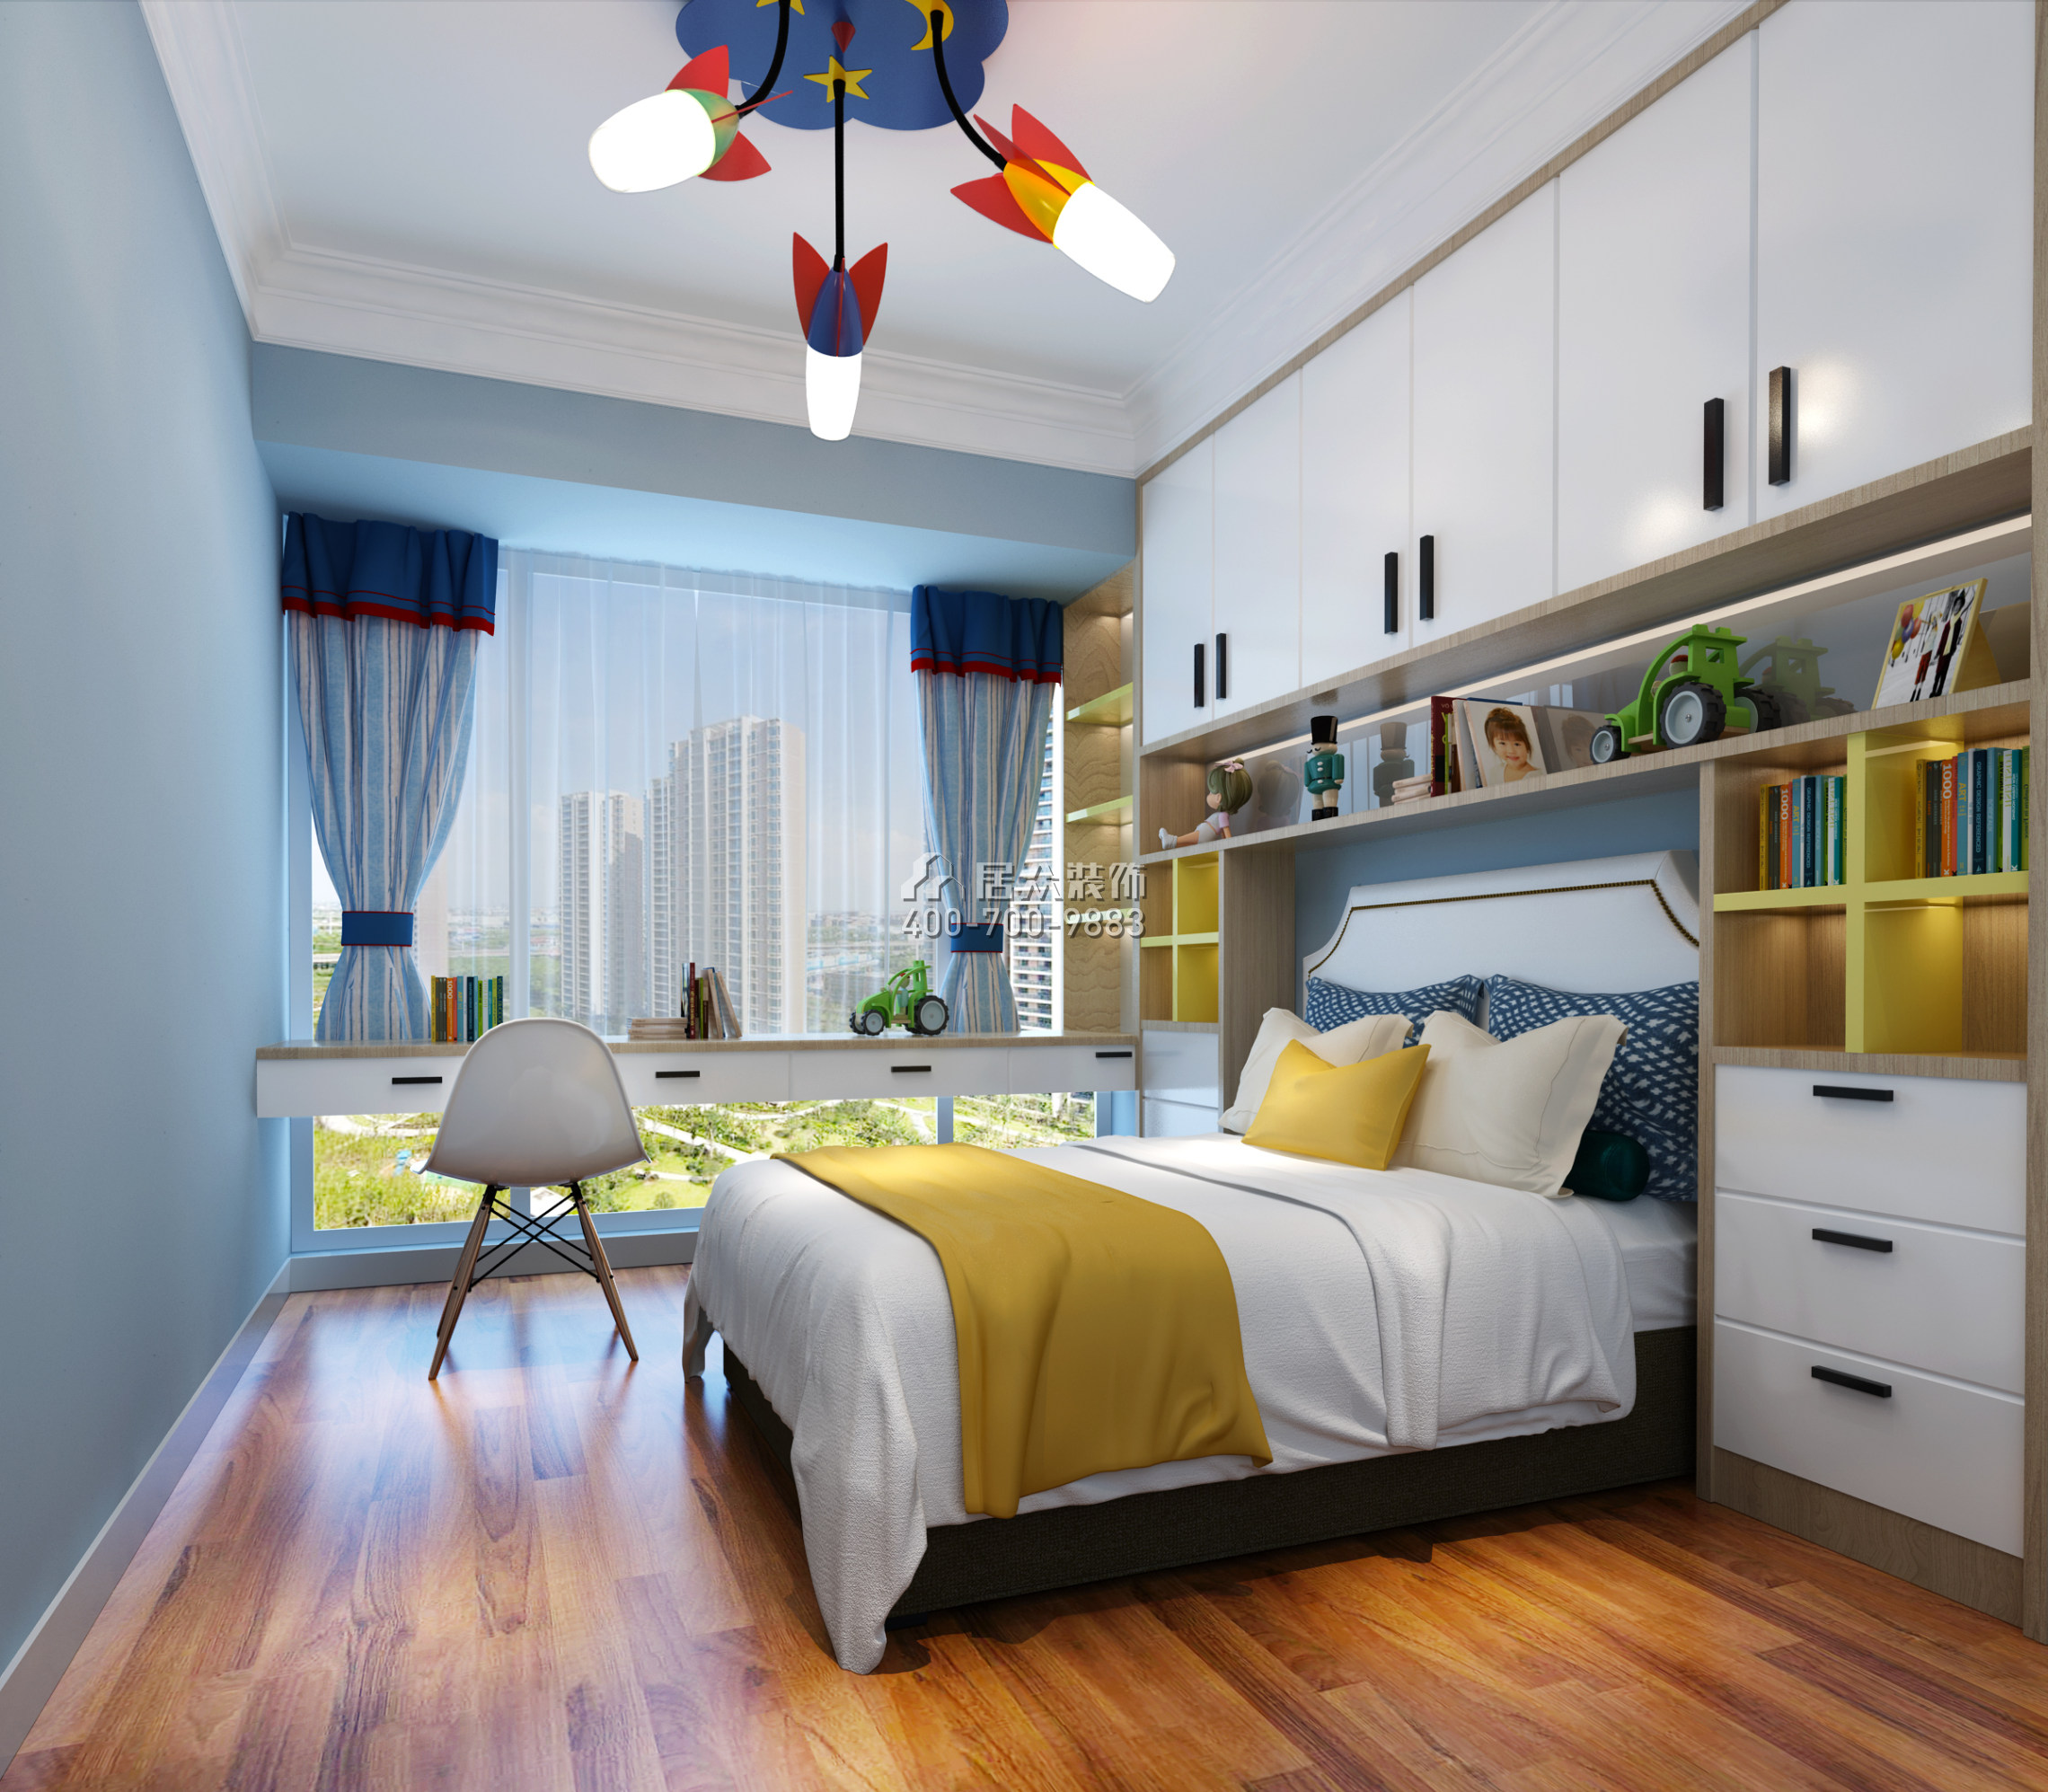 联投东方华府二期120平方米现代简约风格平层户型卧室装修效果图